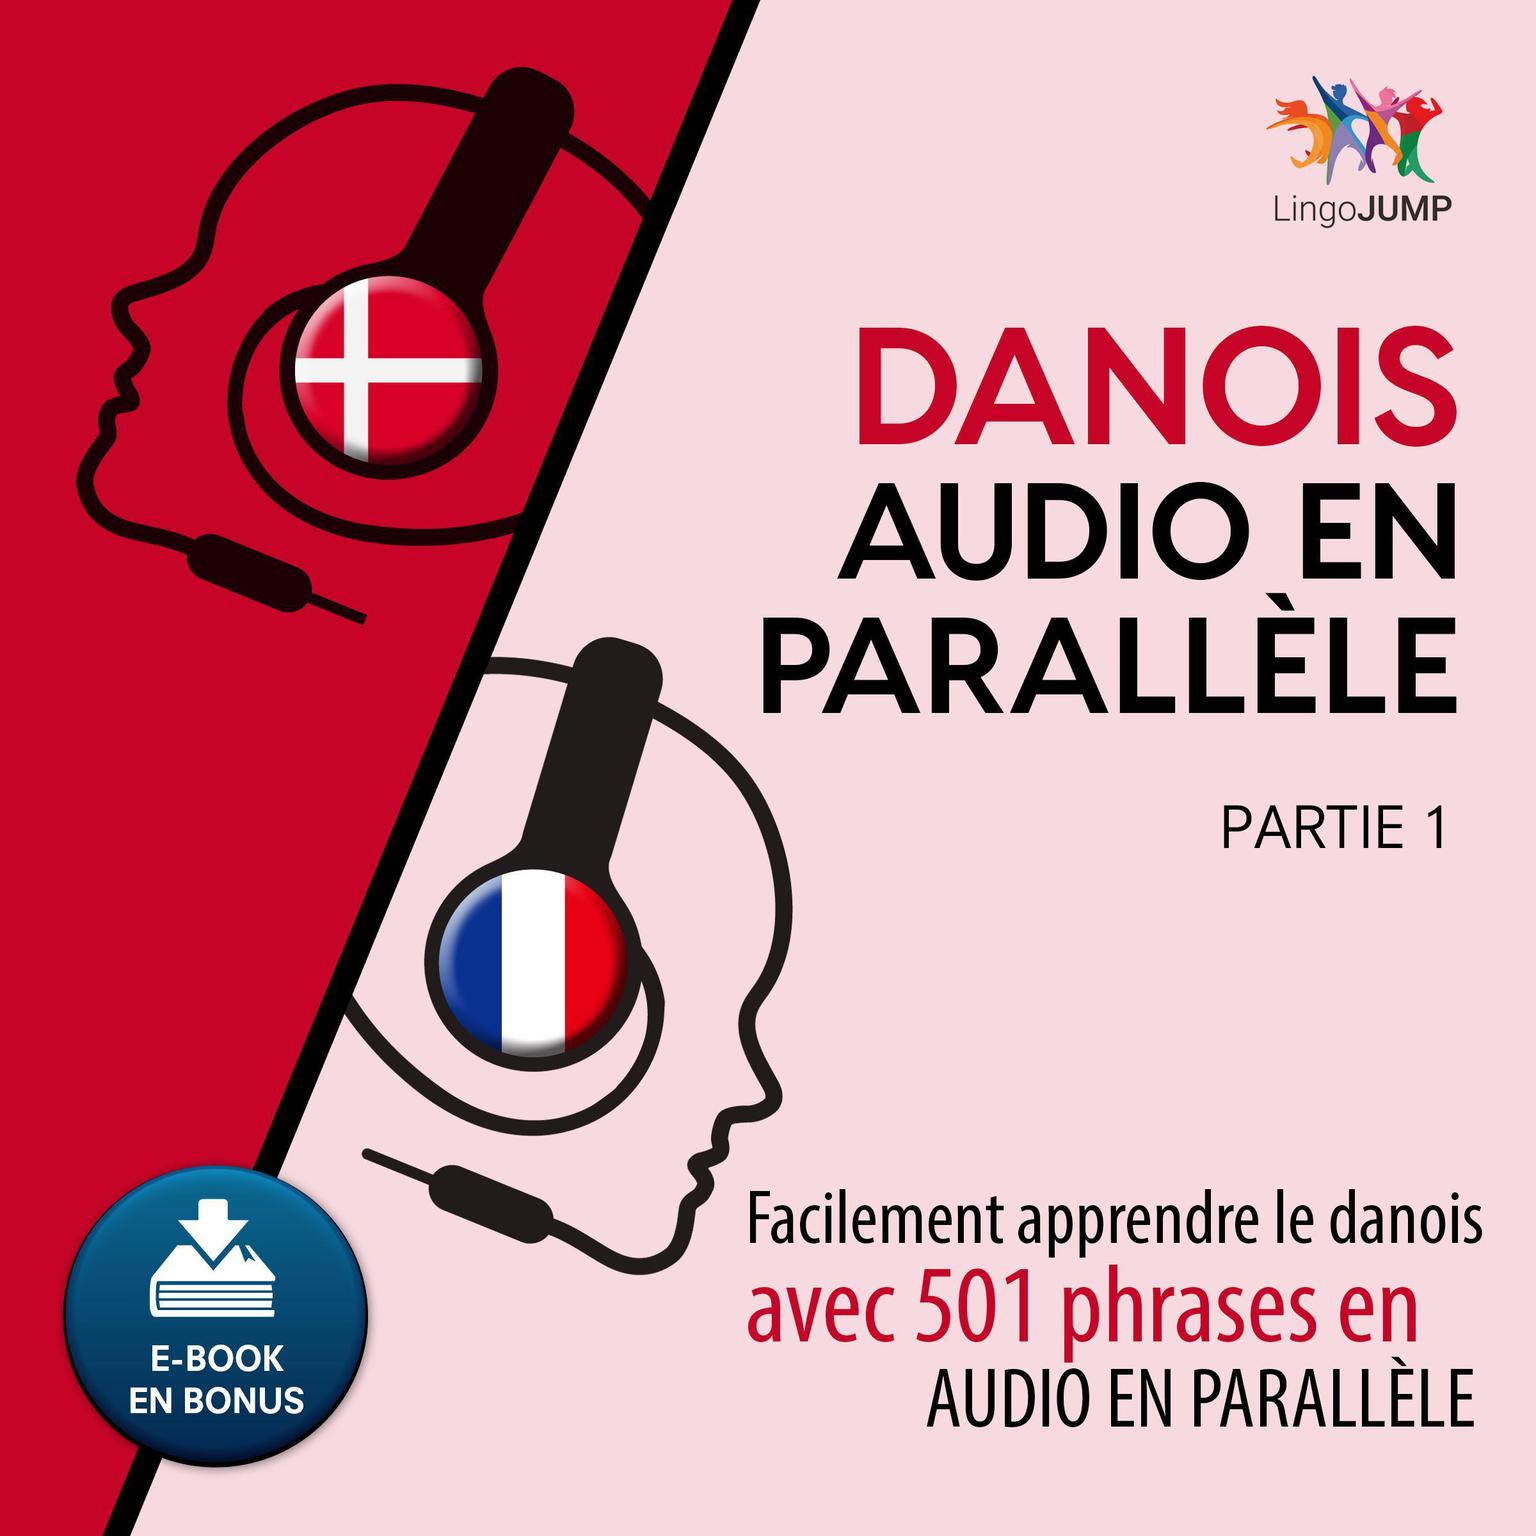 Danois audio en parallle - Facilement apprendre ledanoisavec 501 phrases en audio en parallle - Partie 1 Audiobook, by Lingo Jump